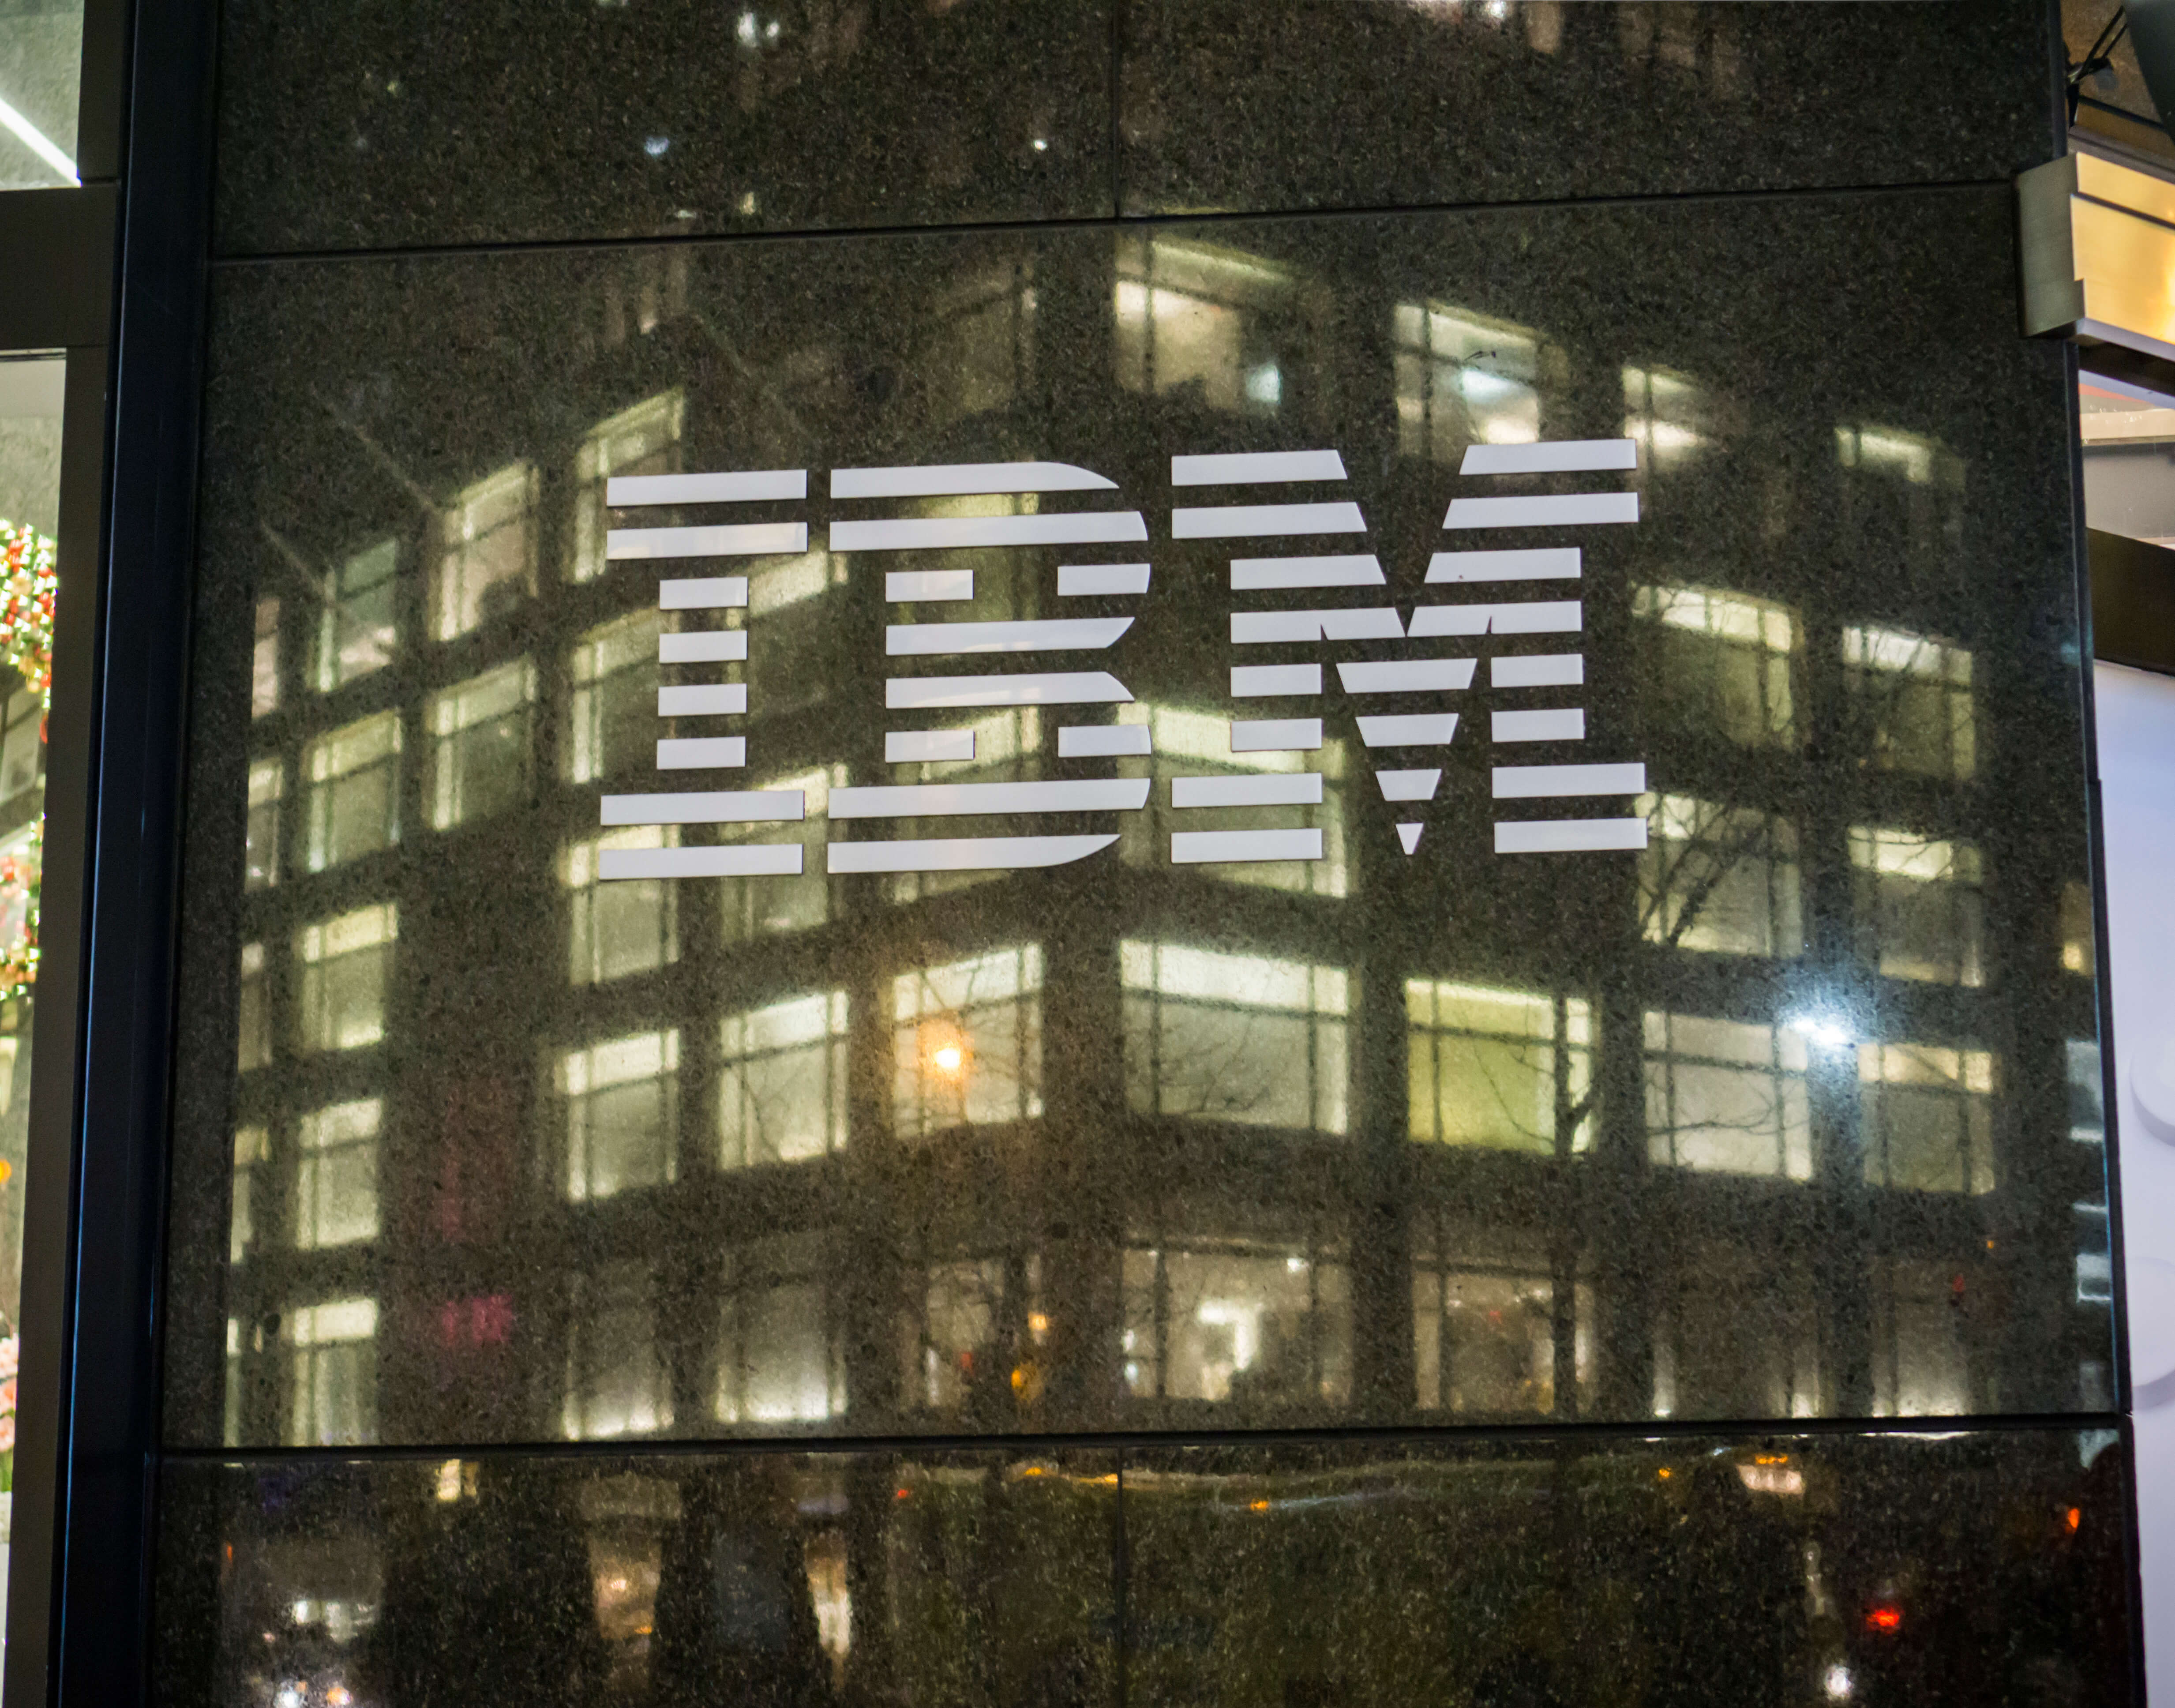 Public cloud giant IBM